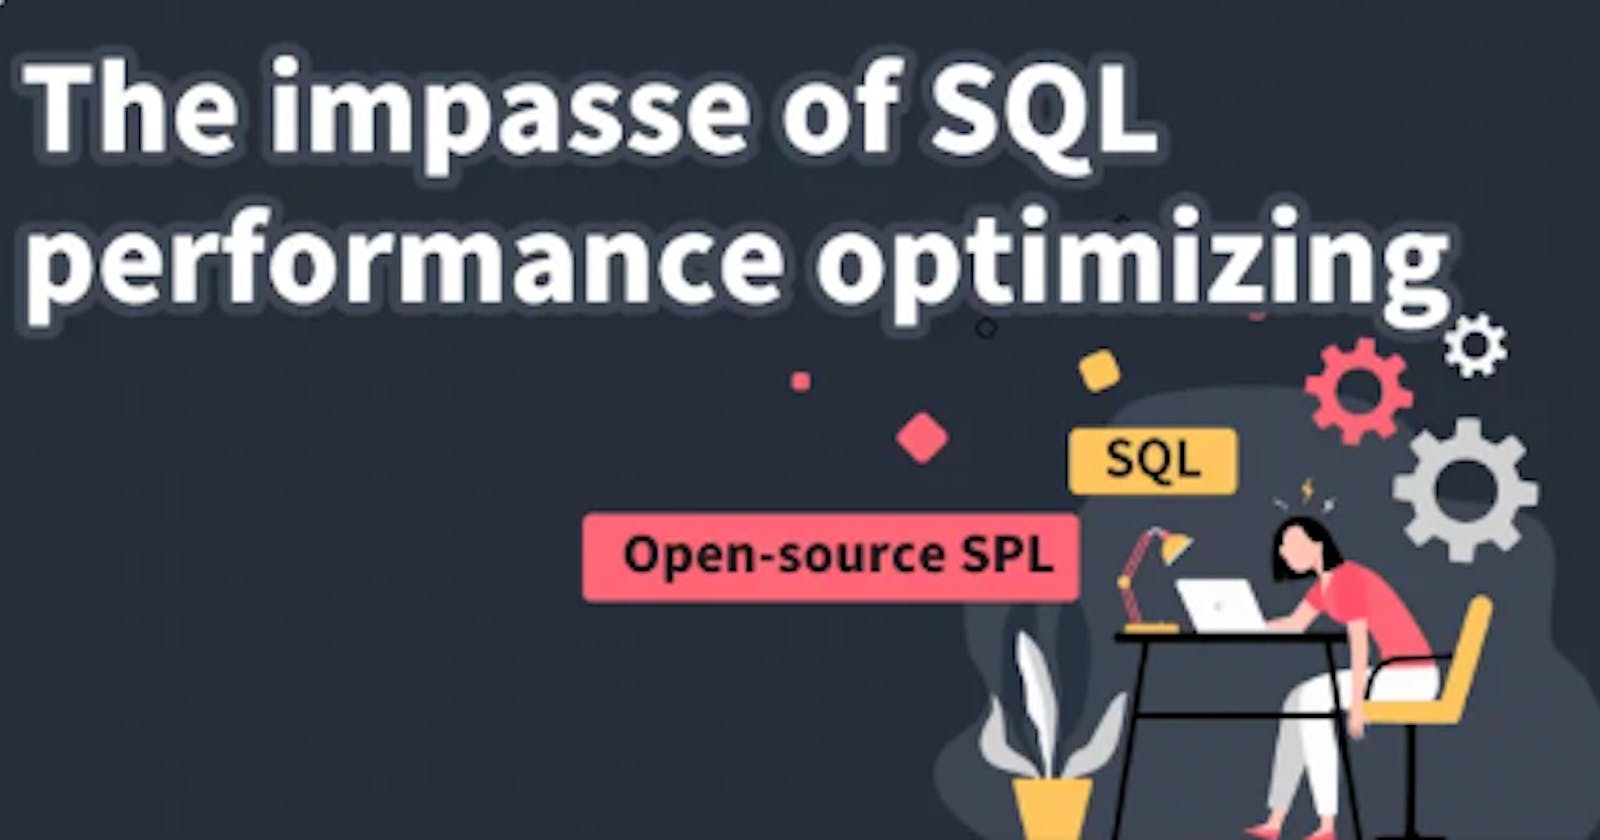 The impasse of SQL performance optimizing